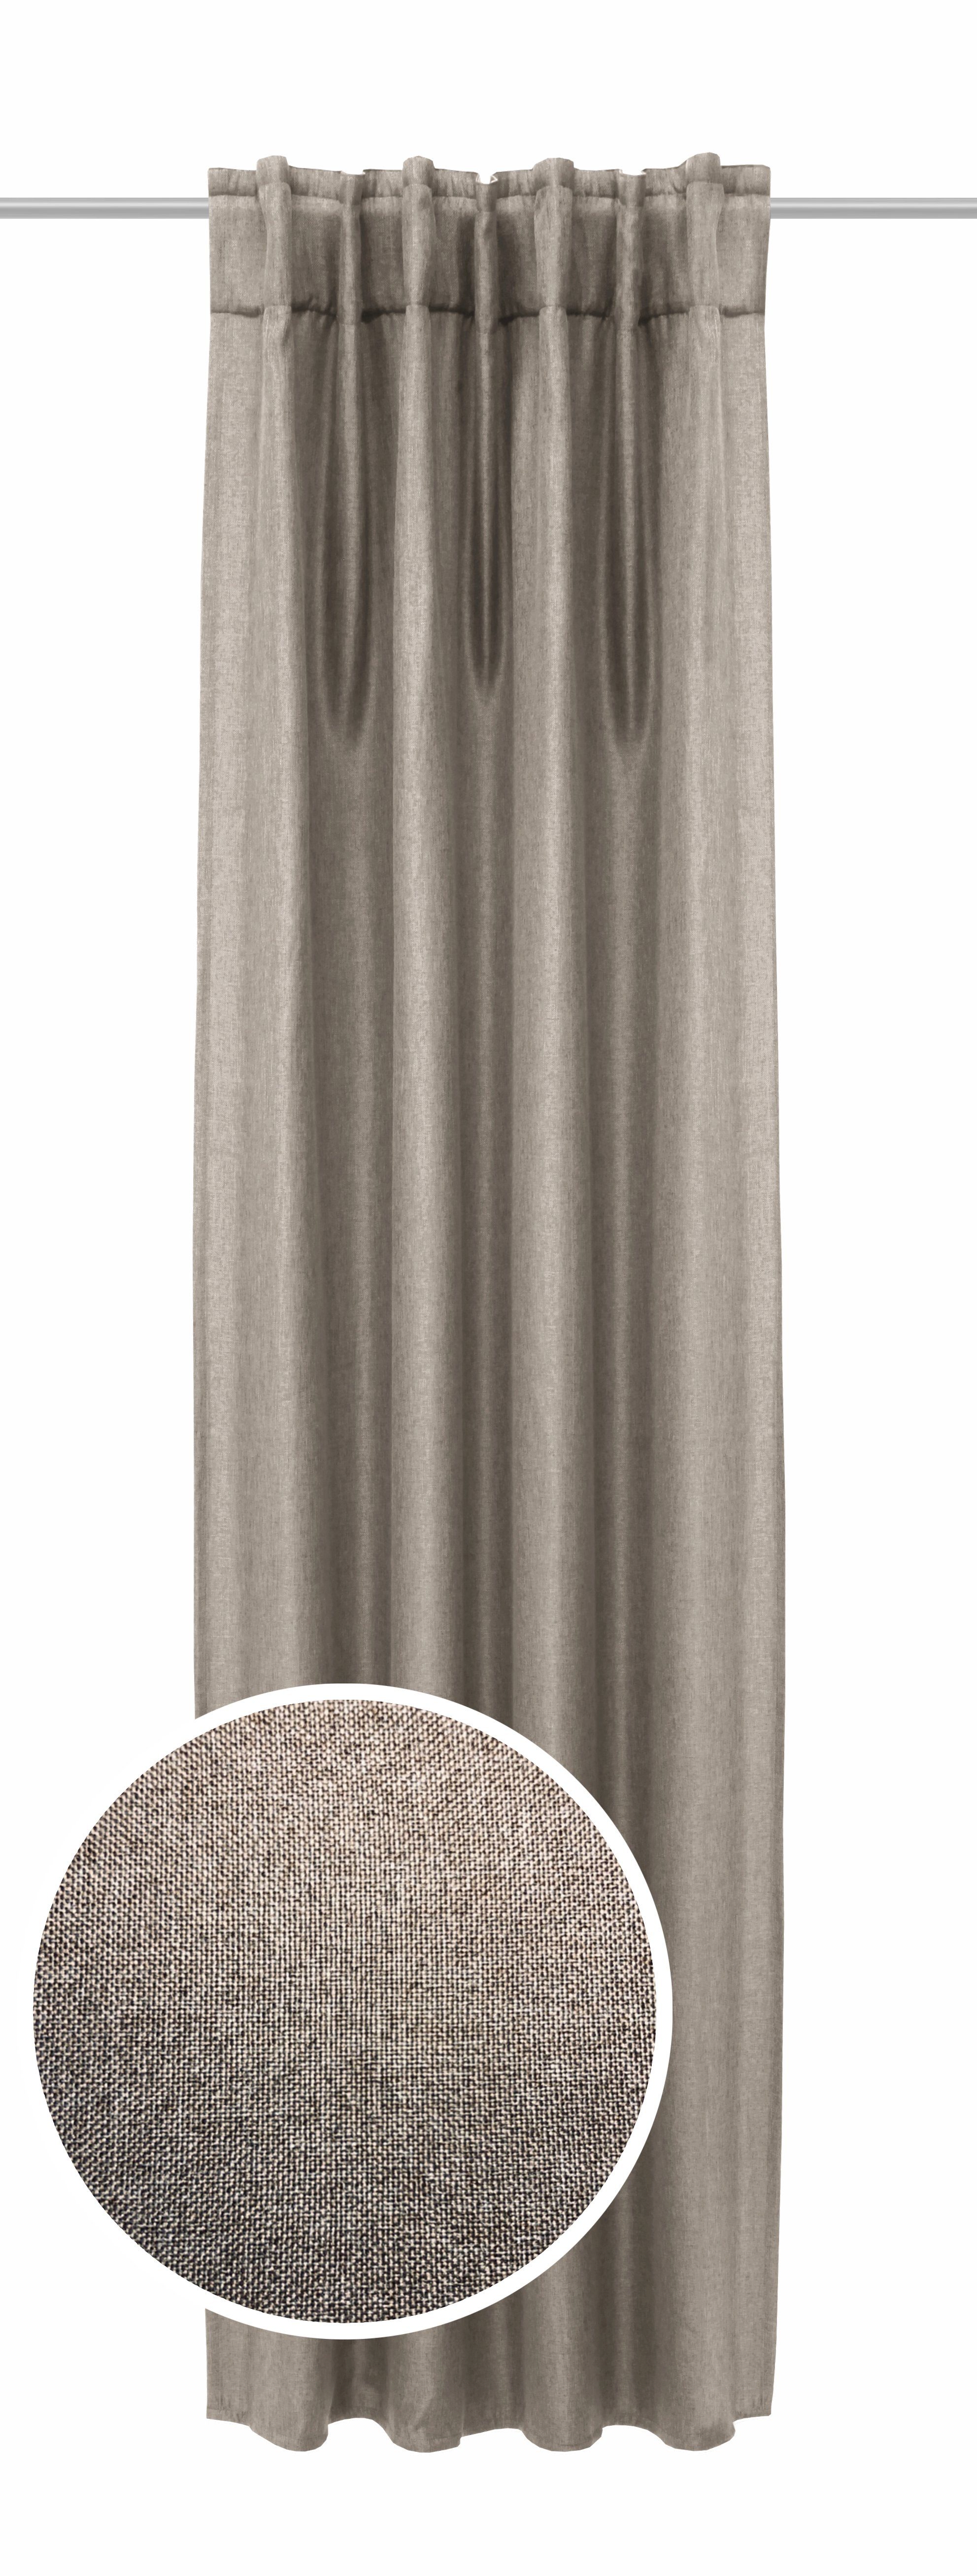 Verdunkelungsvorhang breitem mit Clever-Kauf-24, Multifunktionsband Verdunklungsfertigschal Jolie Vorhang, Leinenoptik, Verdunkelungsvorhang verdunkelnder 13cm